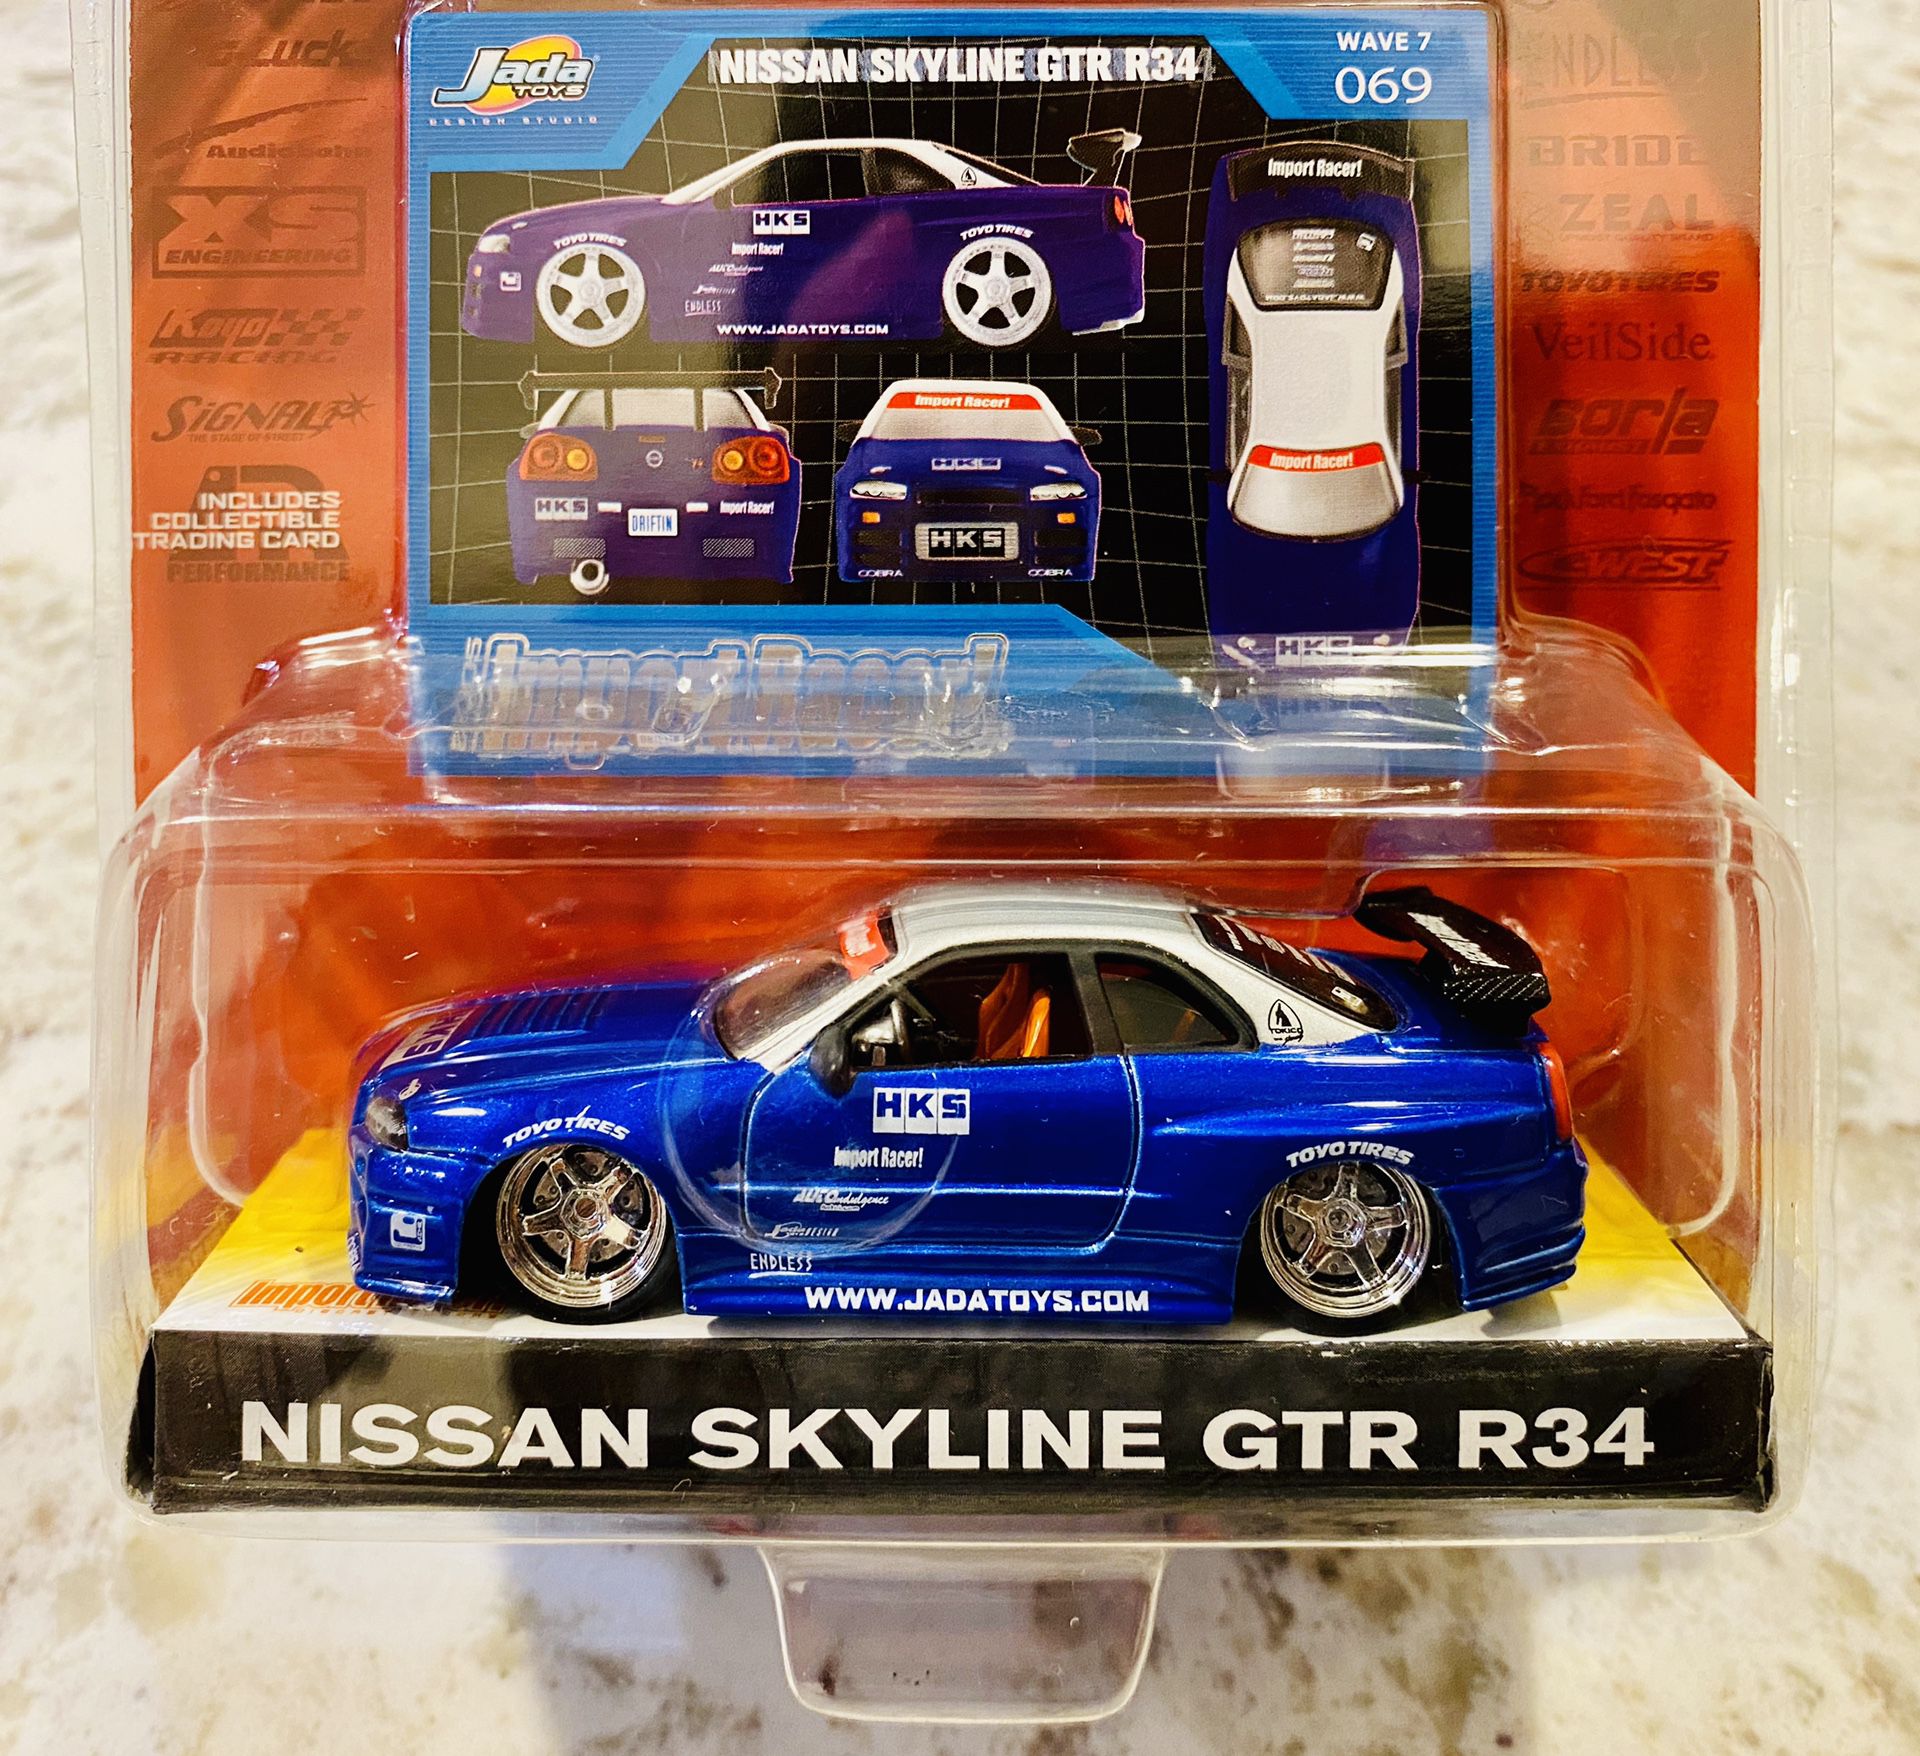 #069 Nissan Skyline GTR R34 | Jada Toys 2003 | 1:64 Scale Diecast Import Racer!